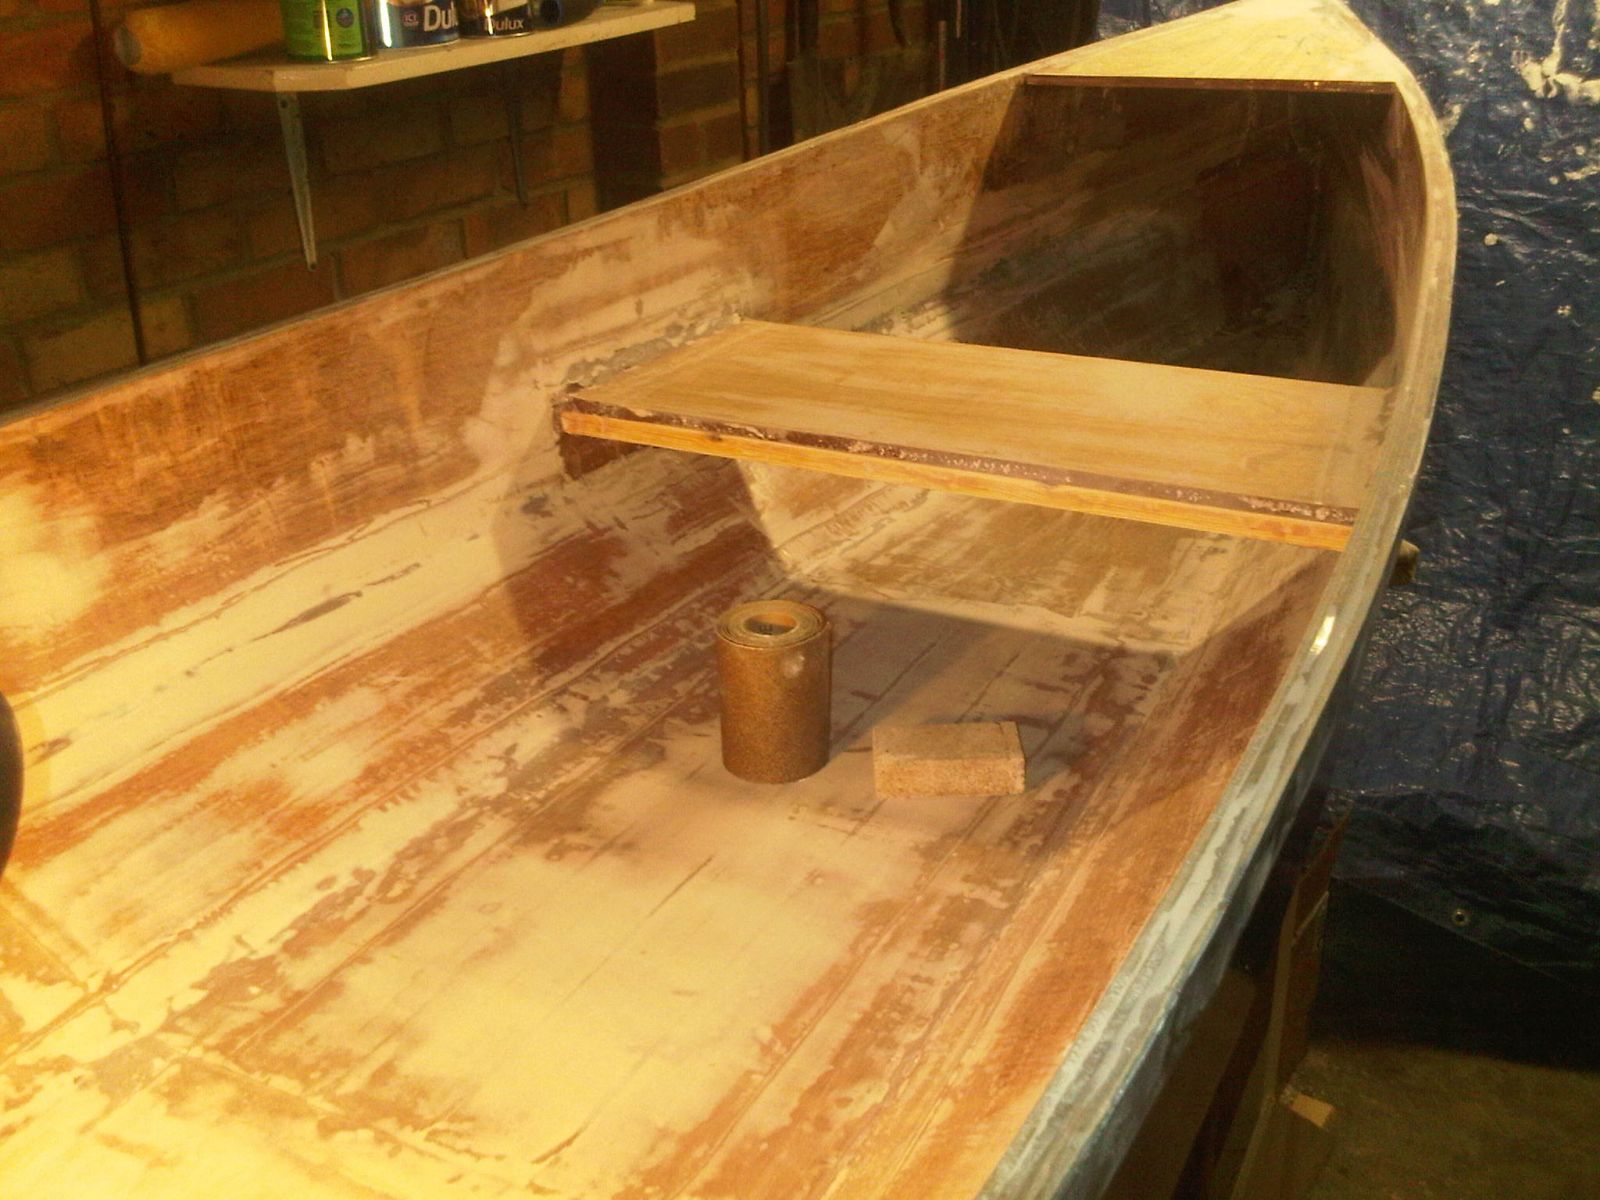 Sanding inside canoe 2
